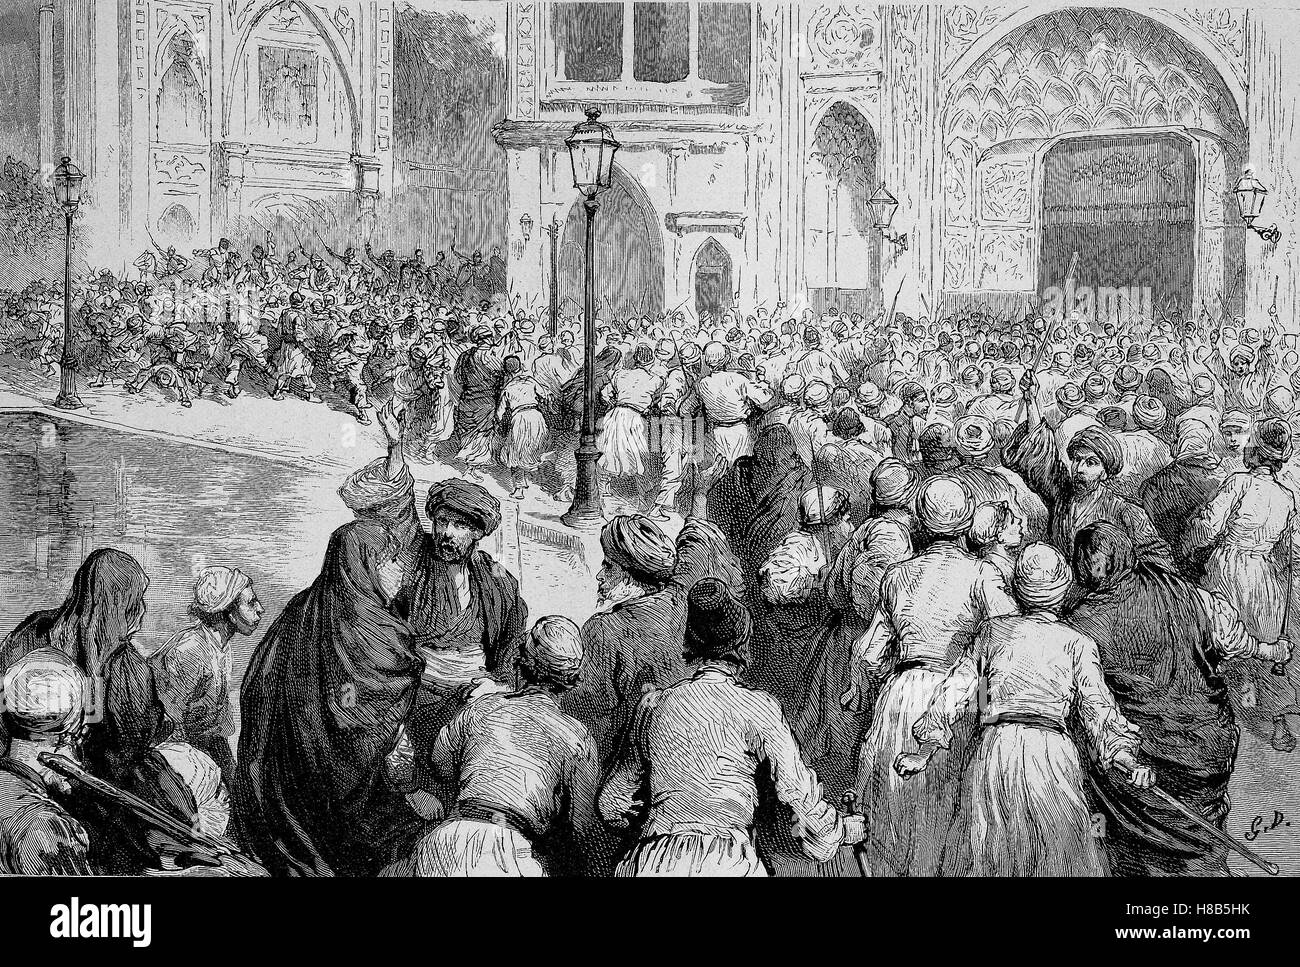 Der Tabak-Aufstand in Persien. Menschenmenge vor dem Palast der Schah fordert die Aufhebung des Monopols, Holzschnitt aus dem Jahre 1892 Stockfoto